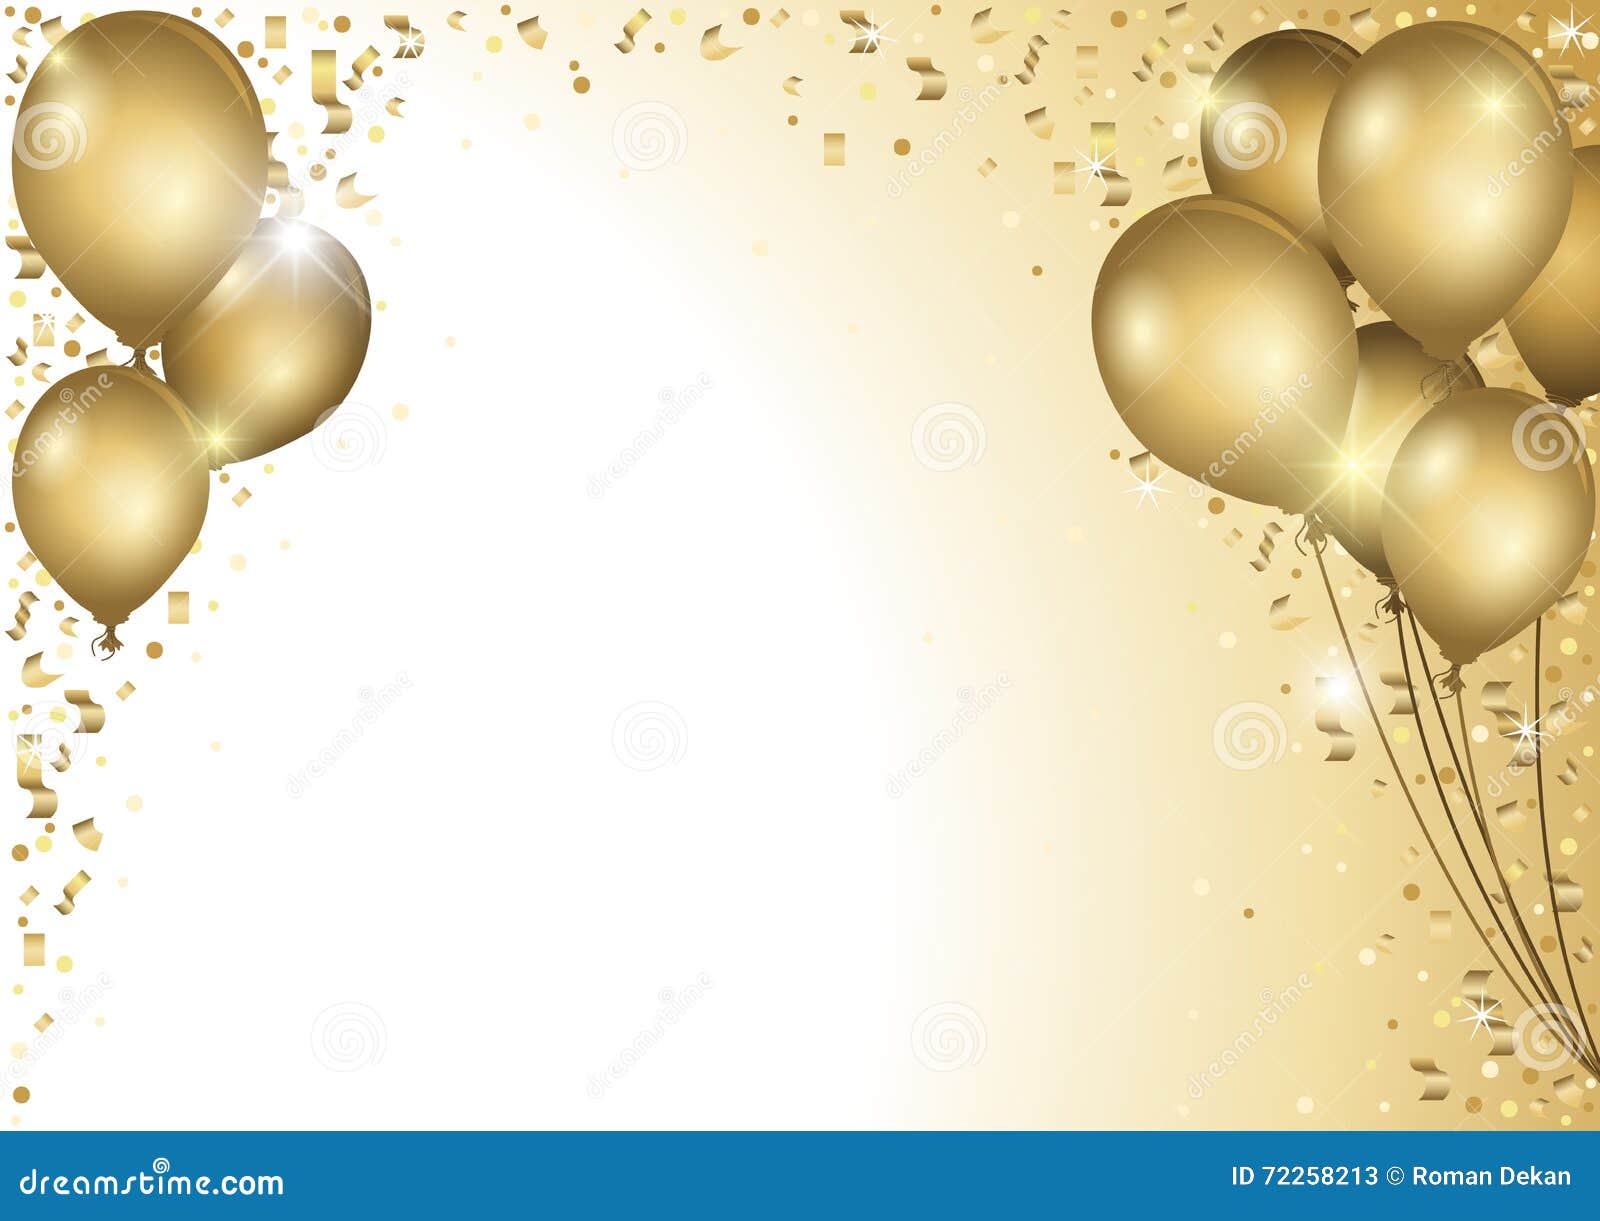 Golden Jubilee Balloons Cartoon Vector 59456457